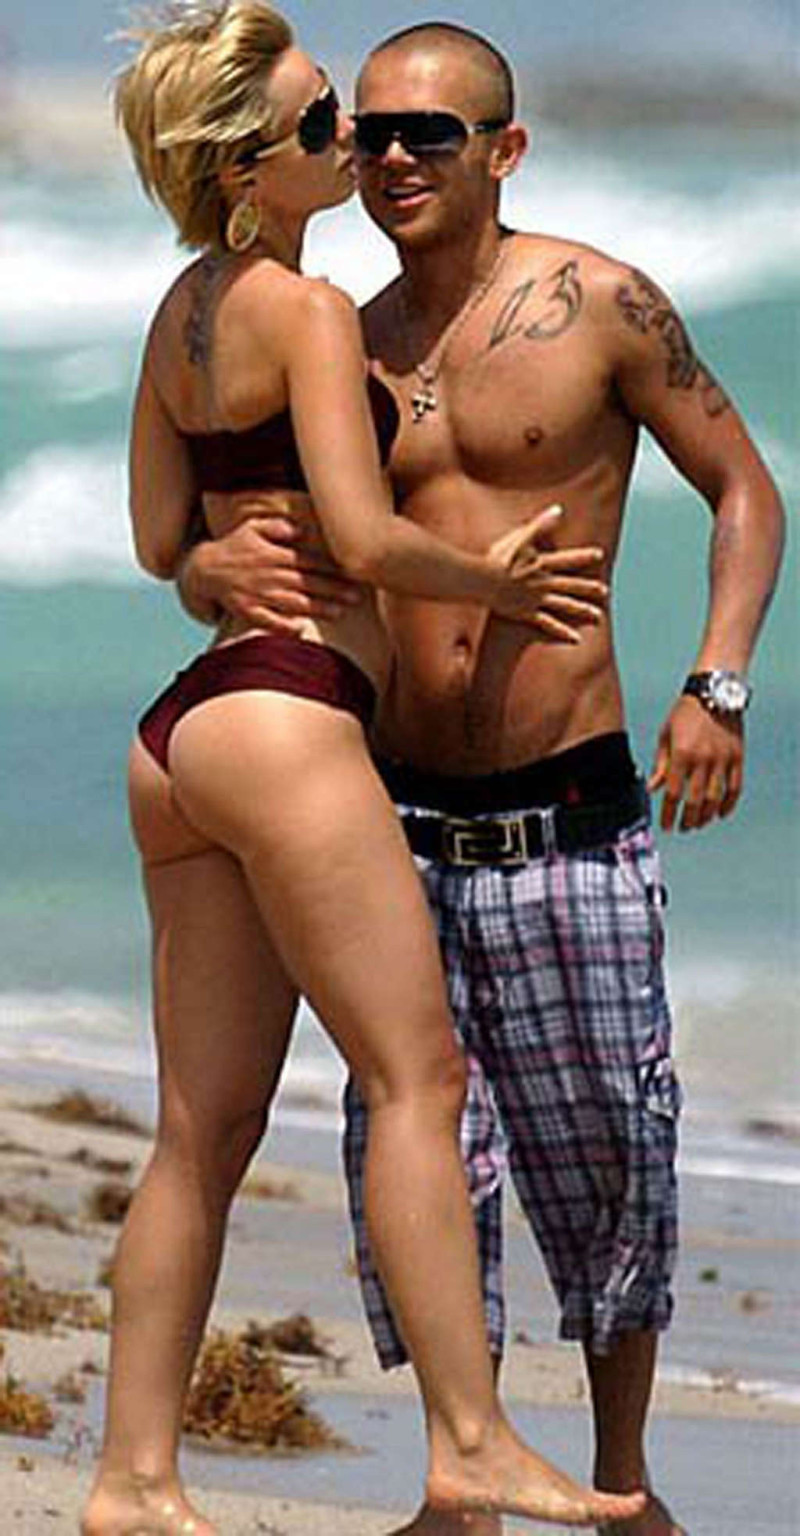 Mena suvari disfrutando en la playa en topless y mostrando el culo sexy en tanga
 #75372682